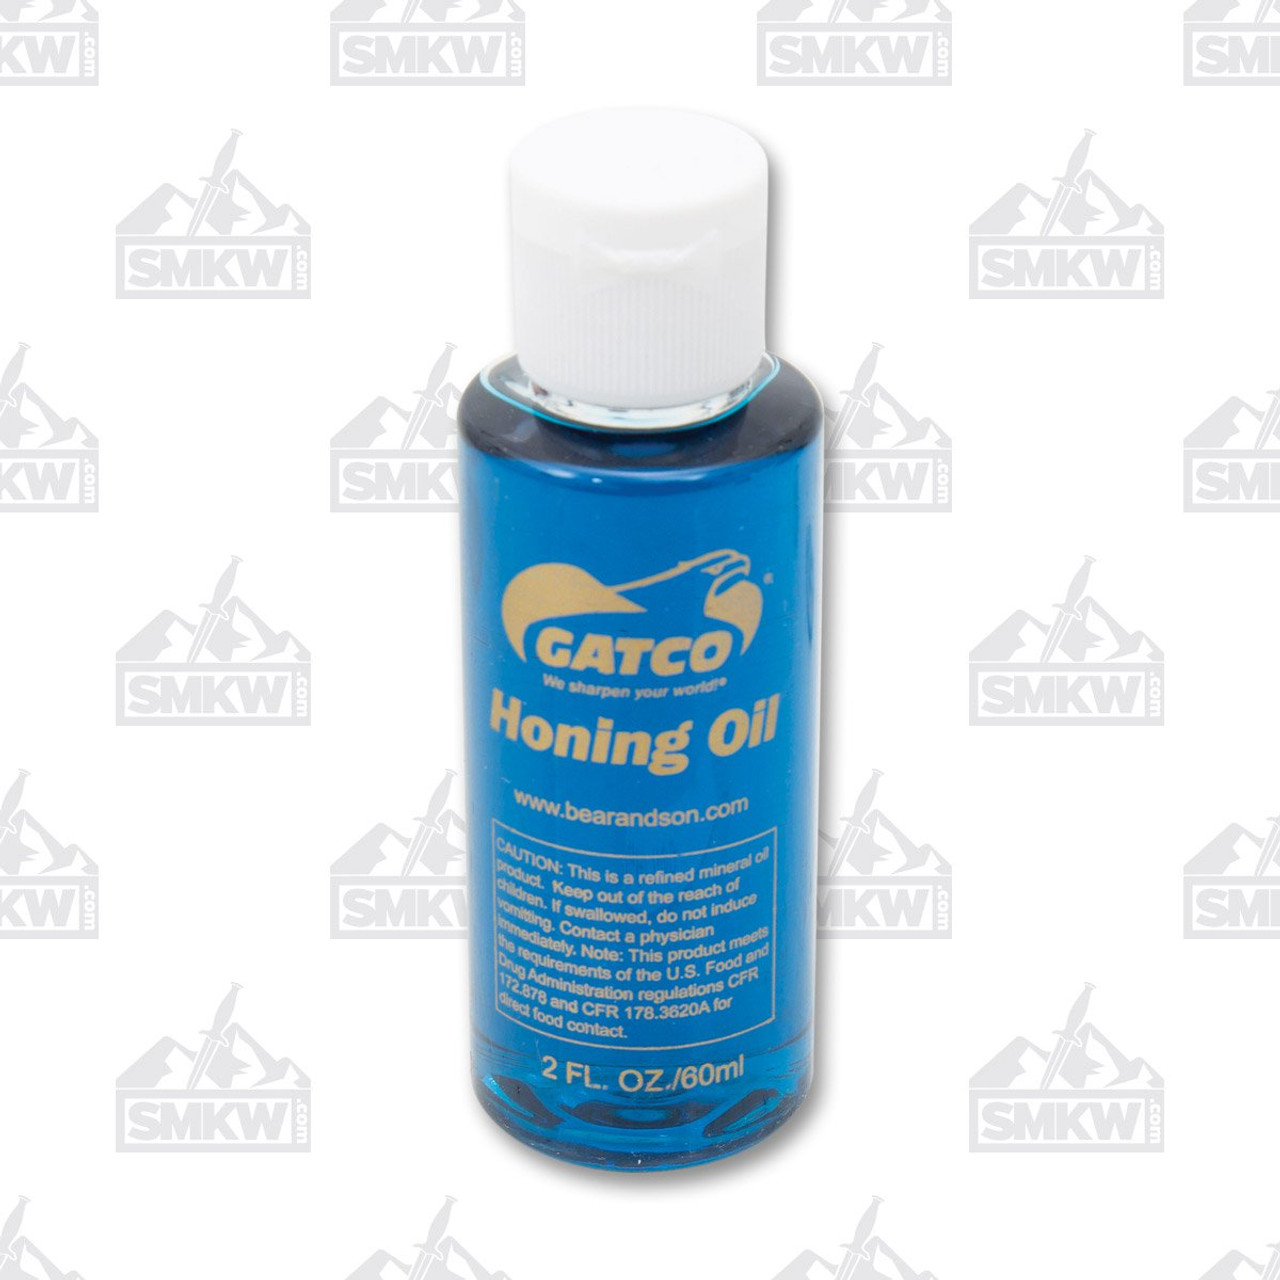 GATCO honing Oil, 2 oz. bottle - KnifeCenter - 11022